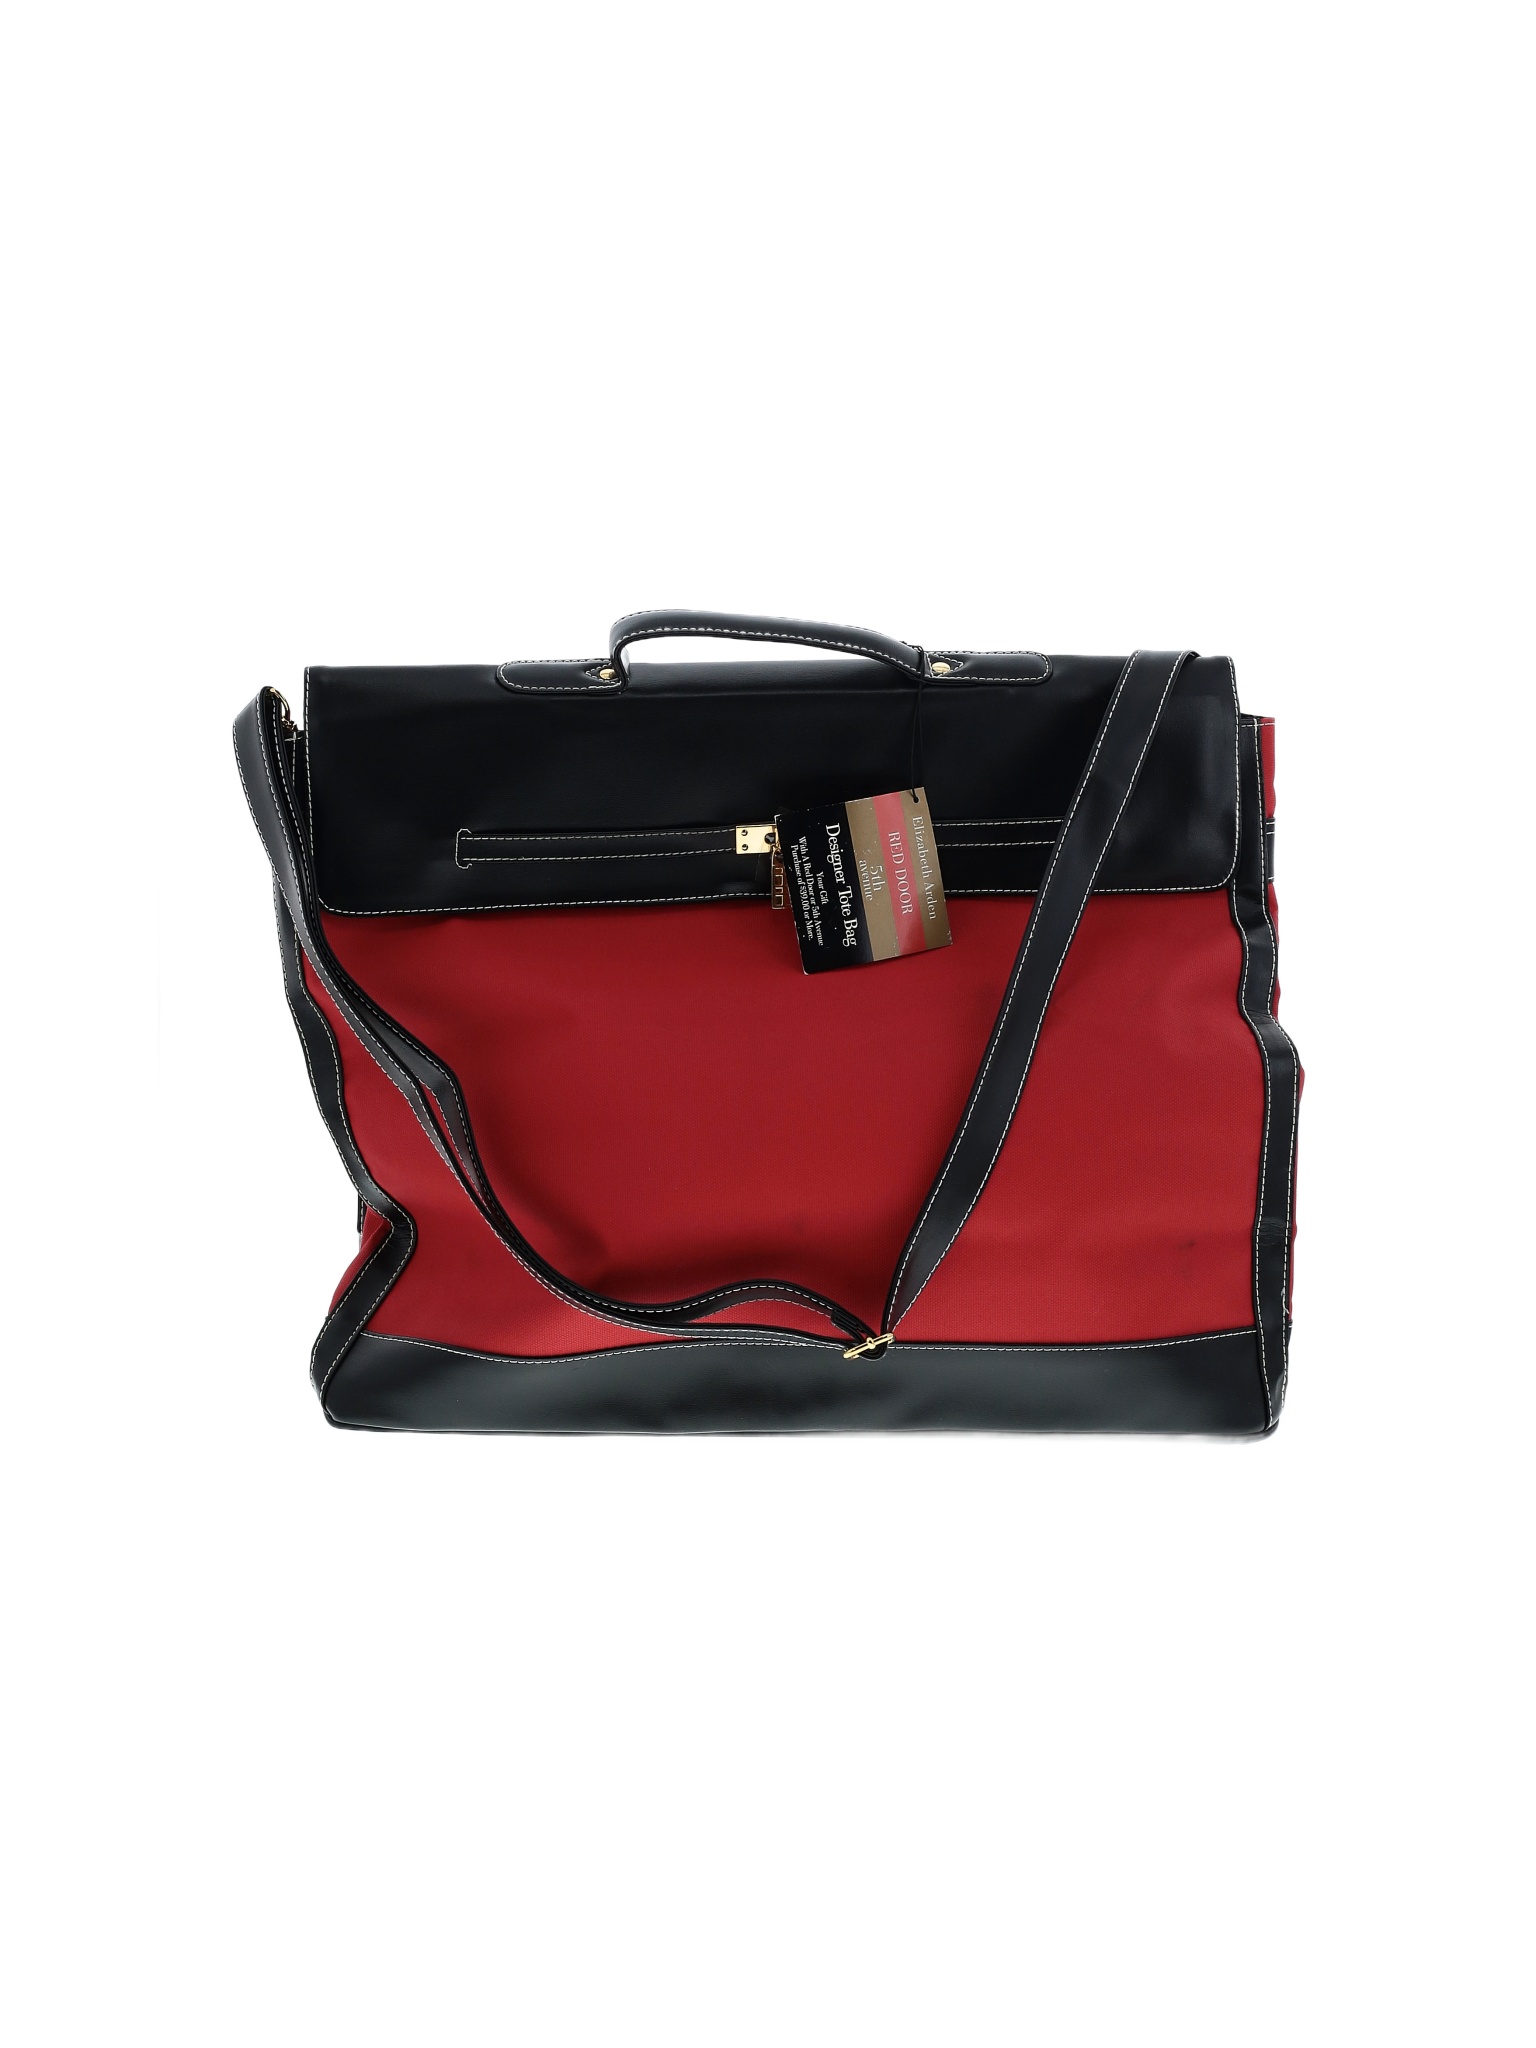 Elizabeth Arden Handbags On Sale Off Retail | thredUP